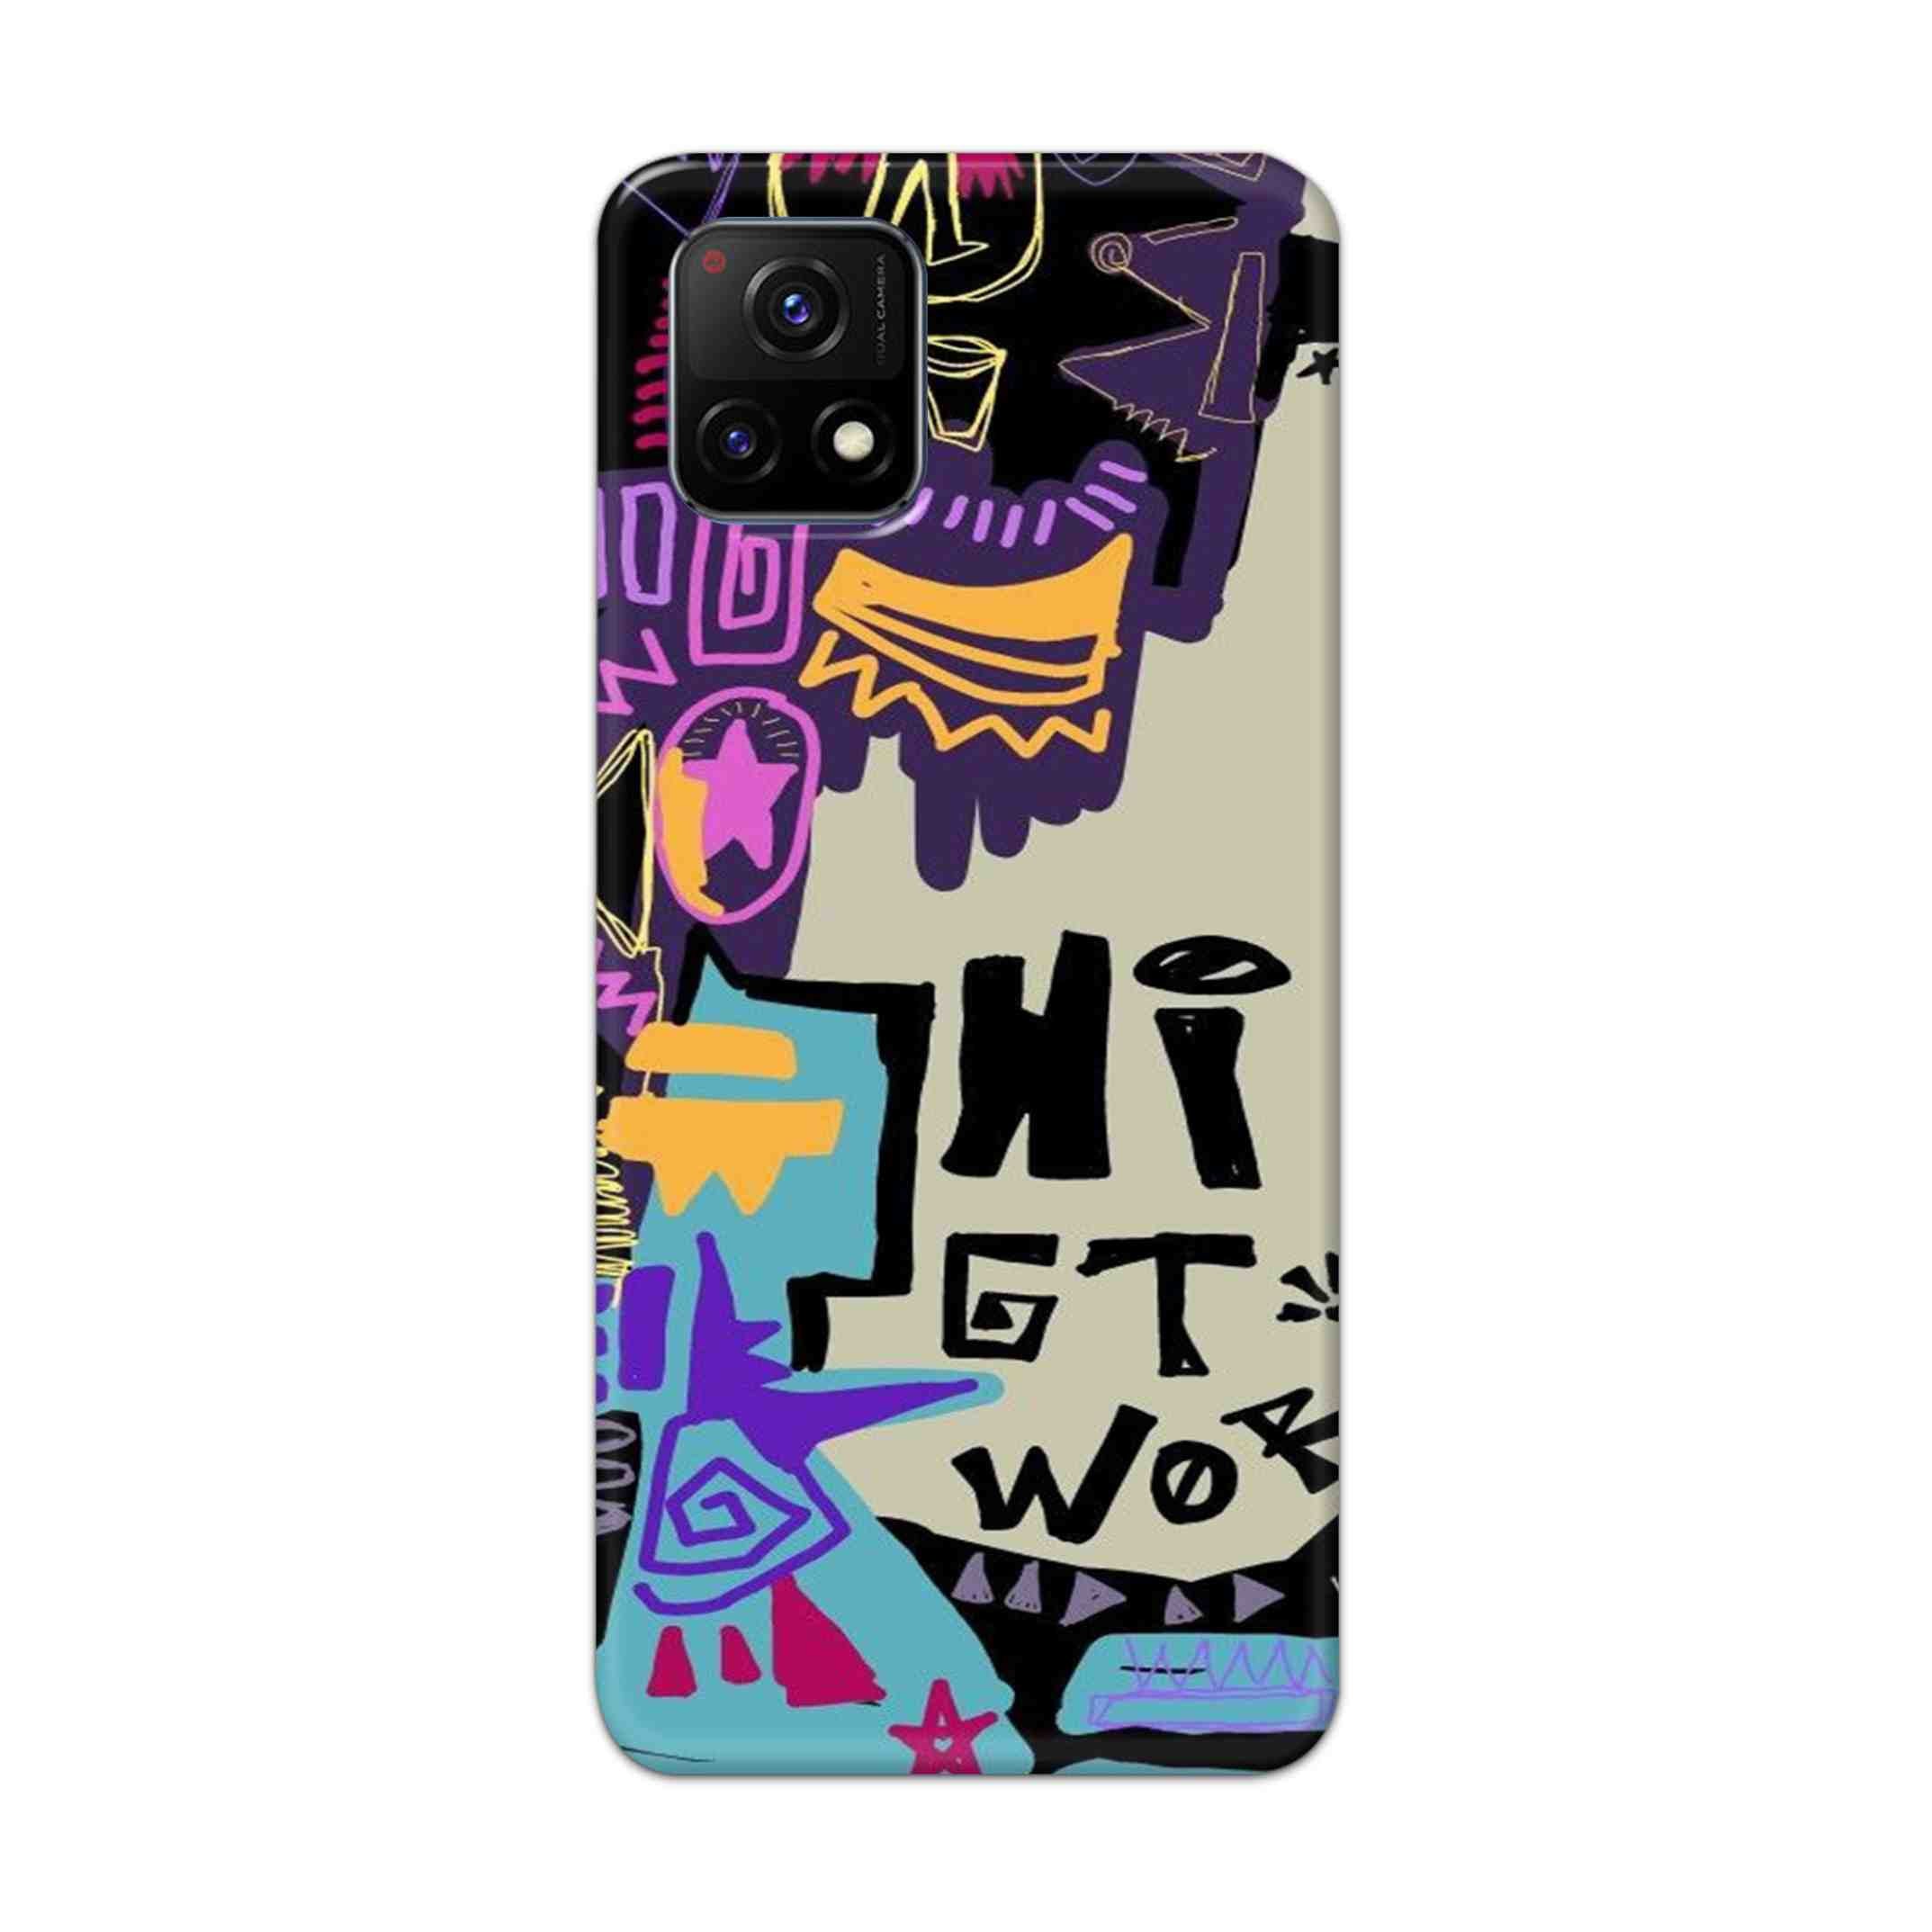 Buy Hi Gt World Hard Back Mobile Phone Case Cover For Vivo Y72 5G Online